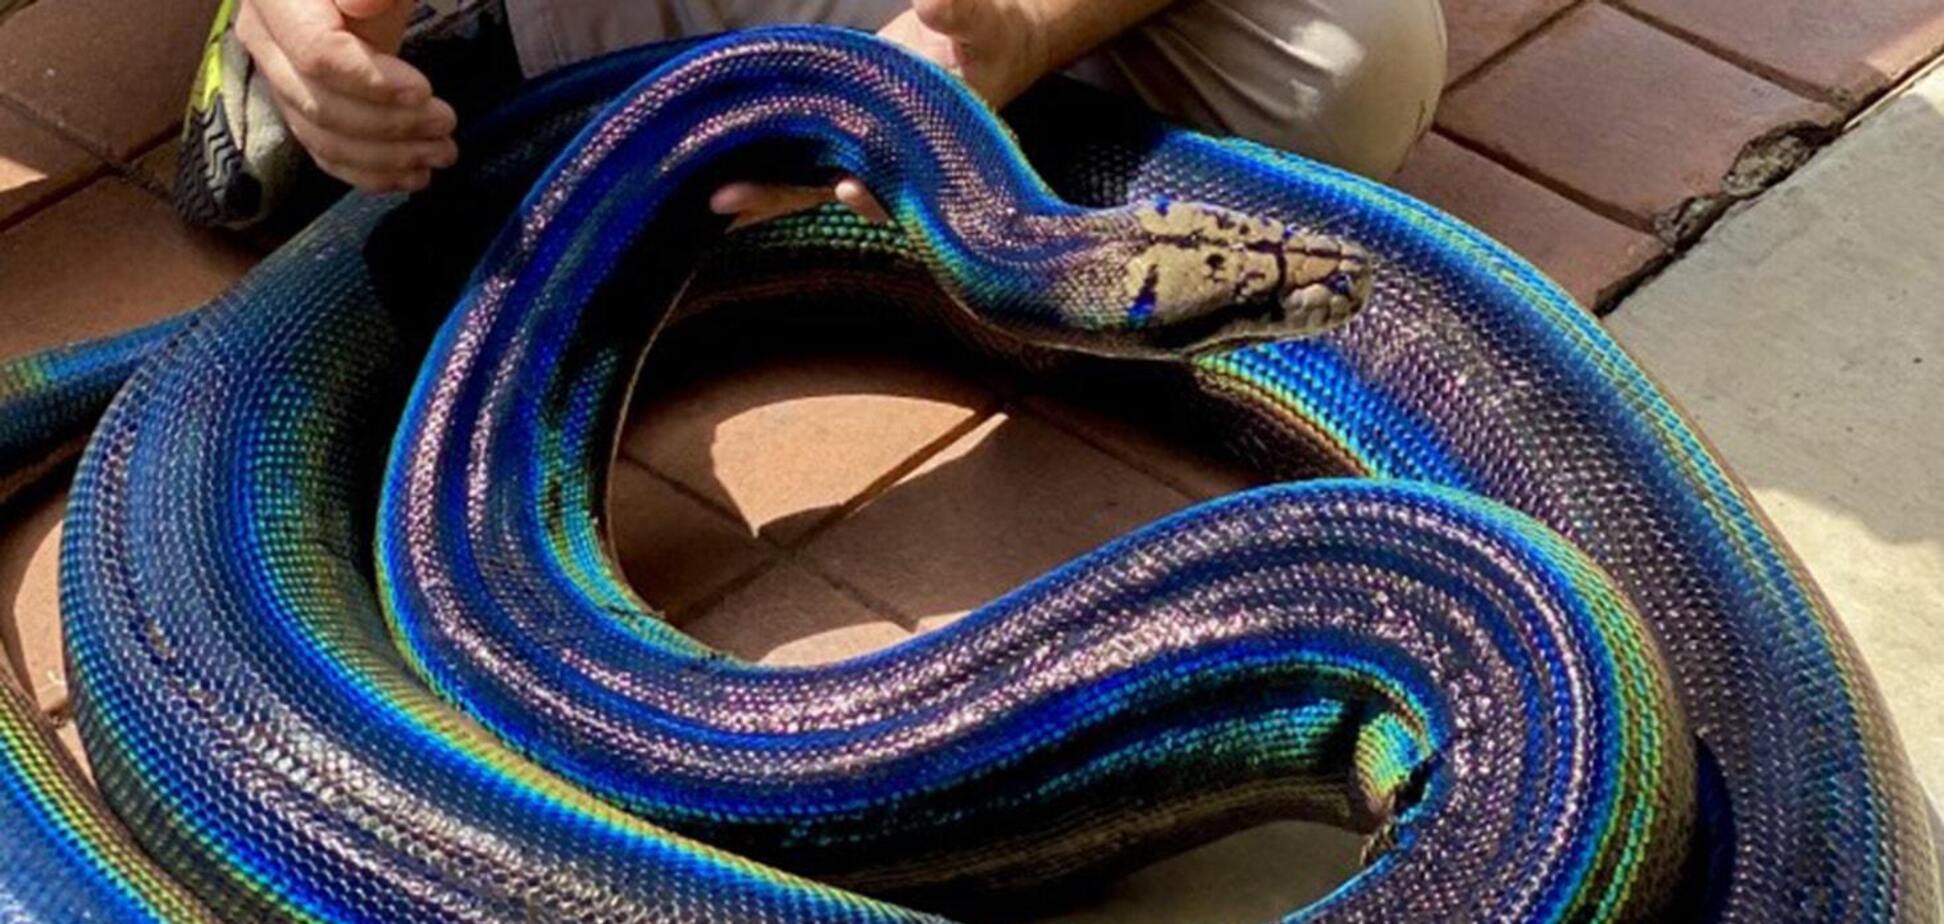 Змея с необычным окрасом из США